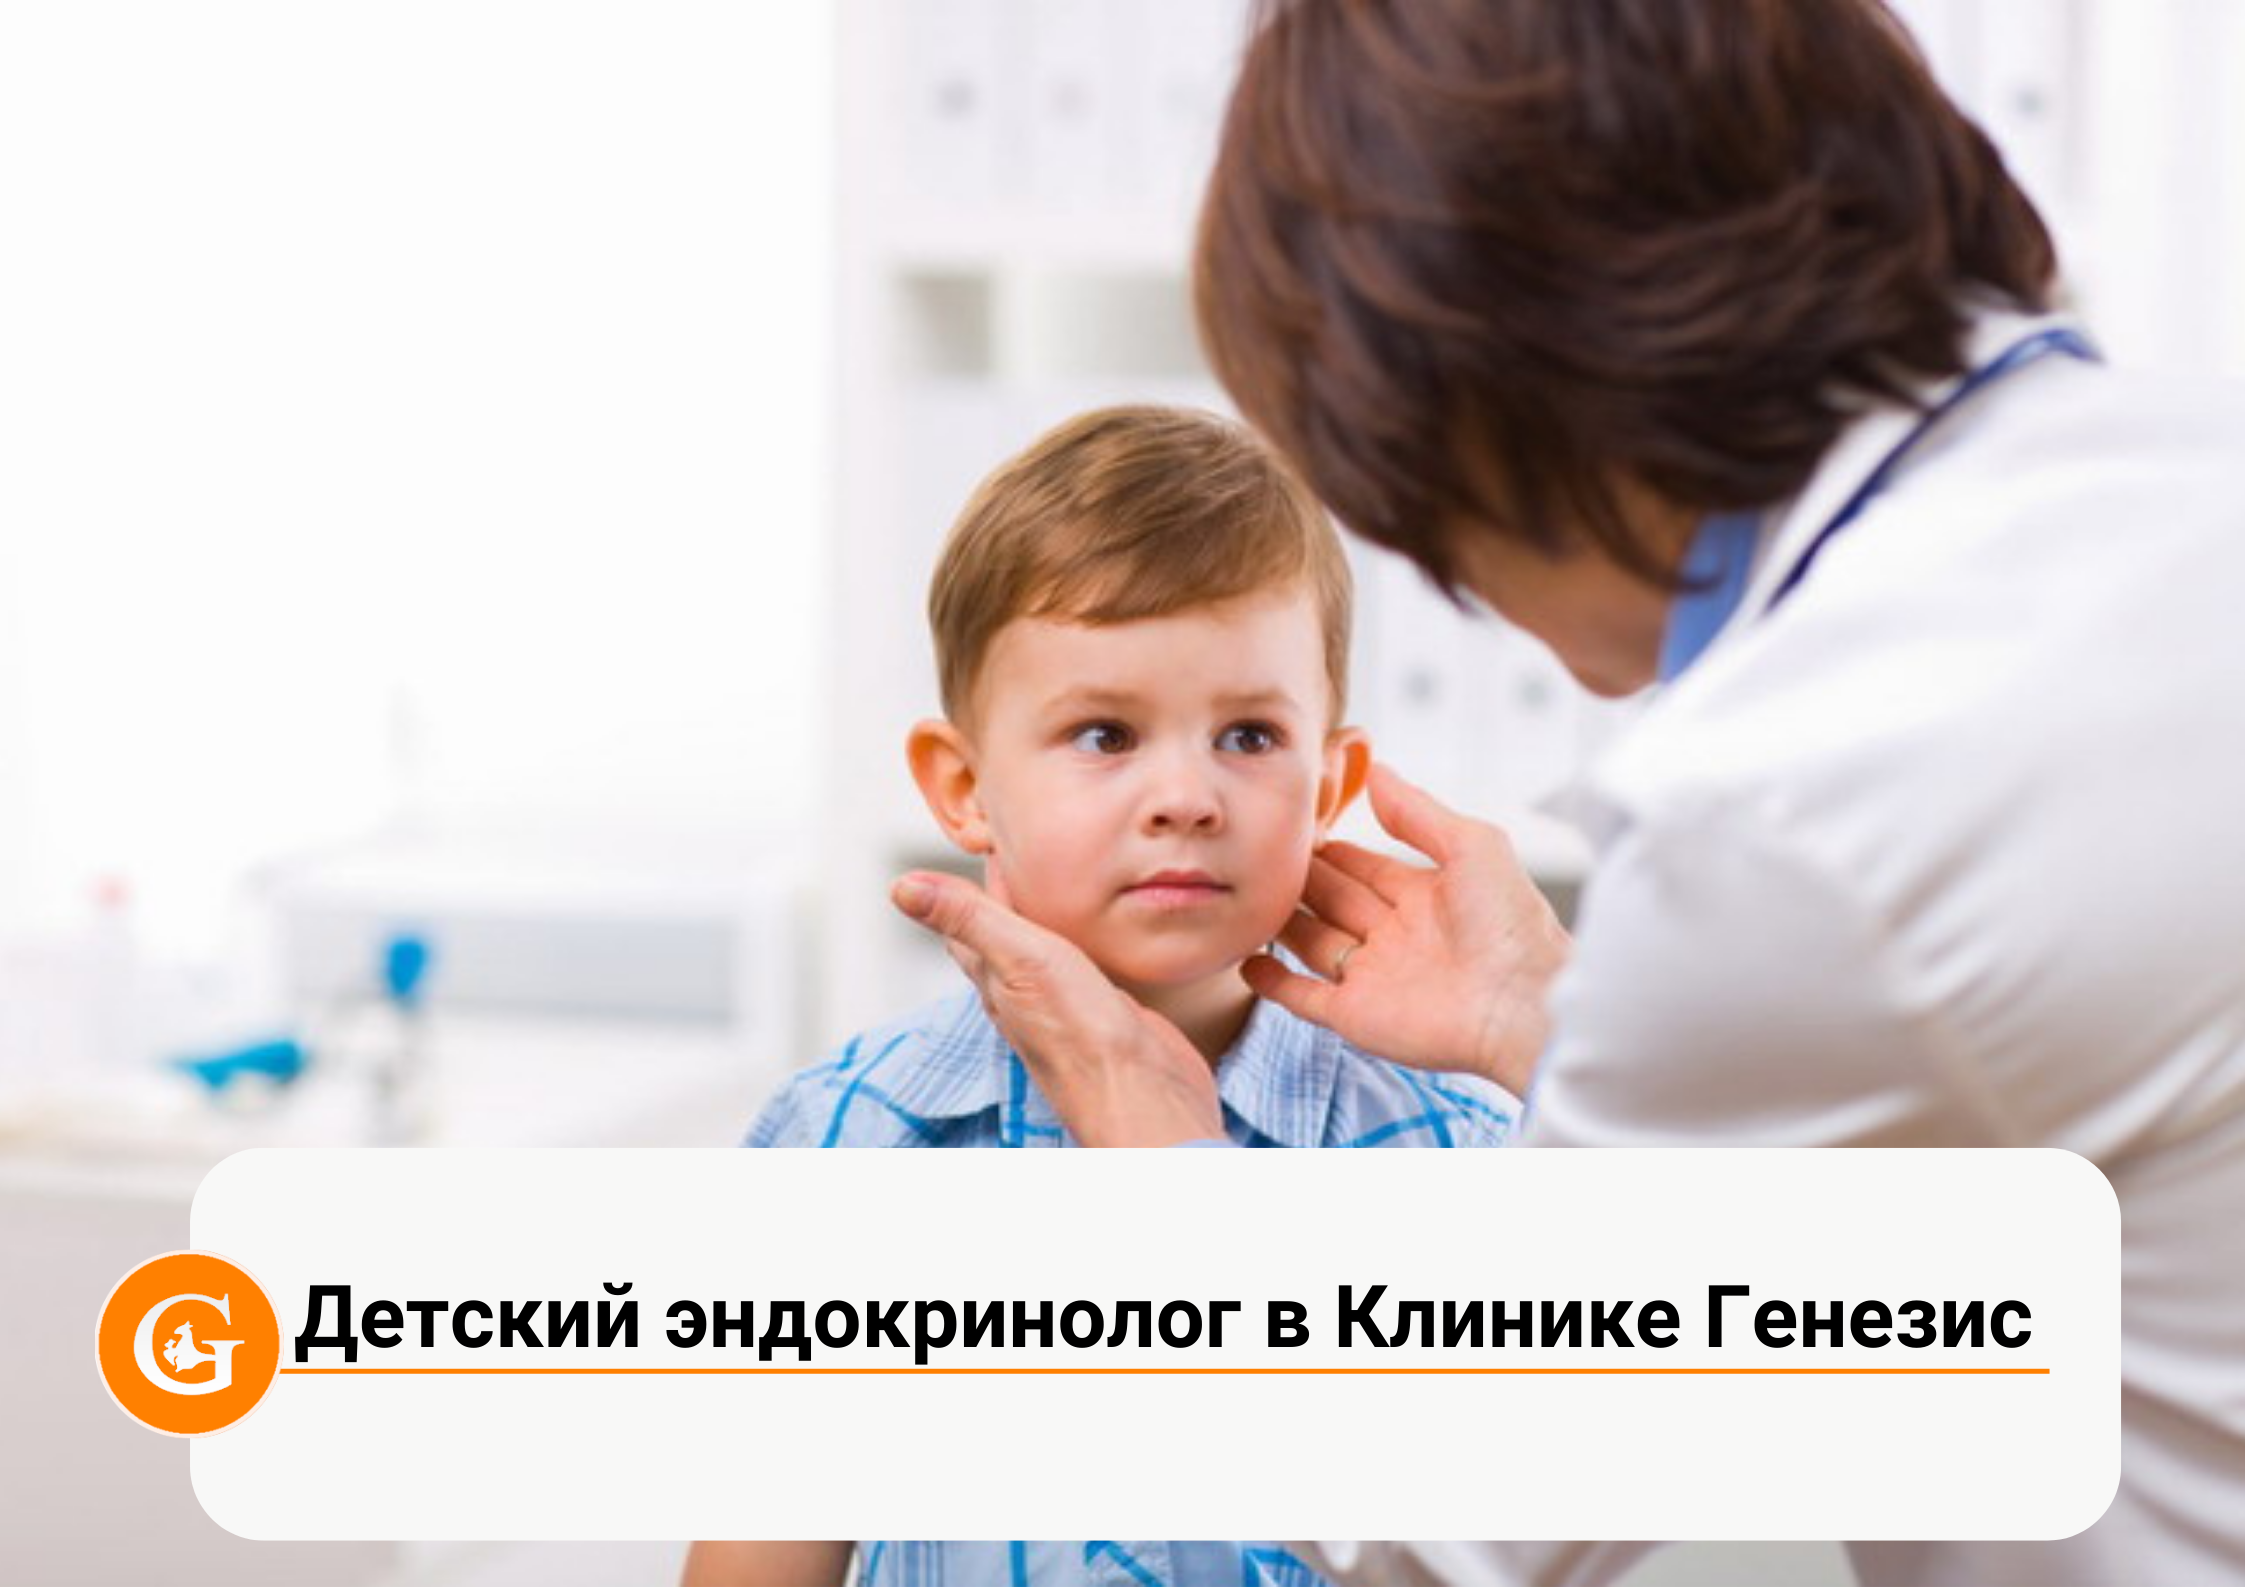 Детский эндокринолог в Клинике Генезис